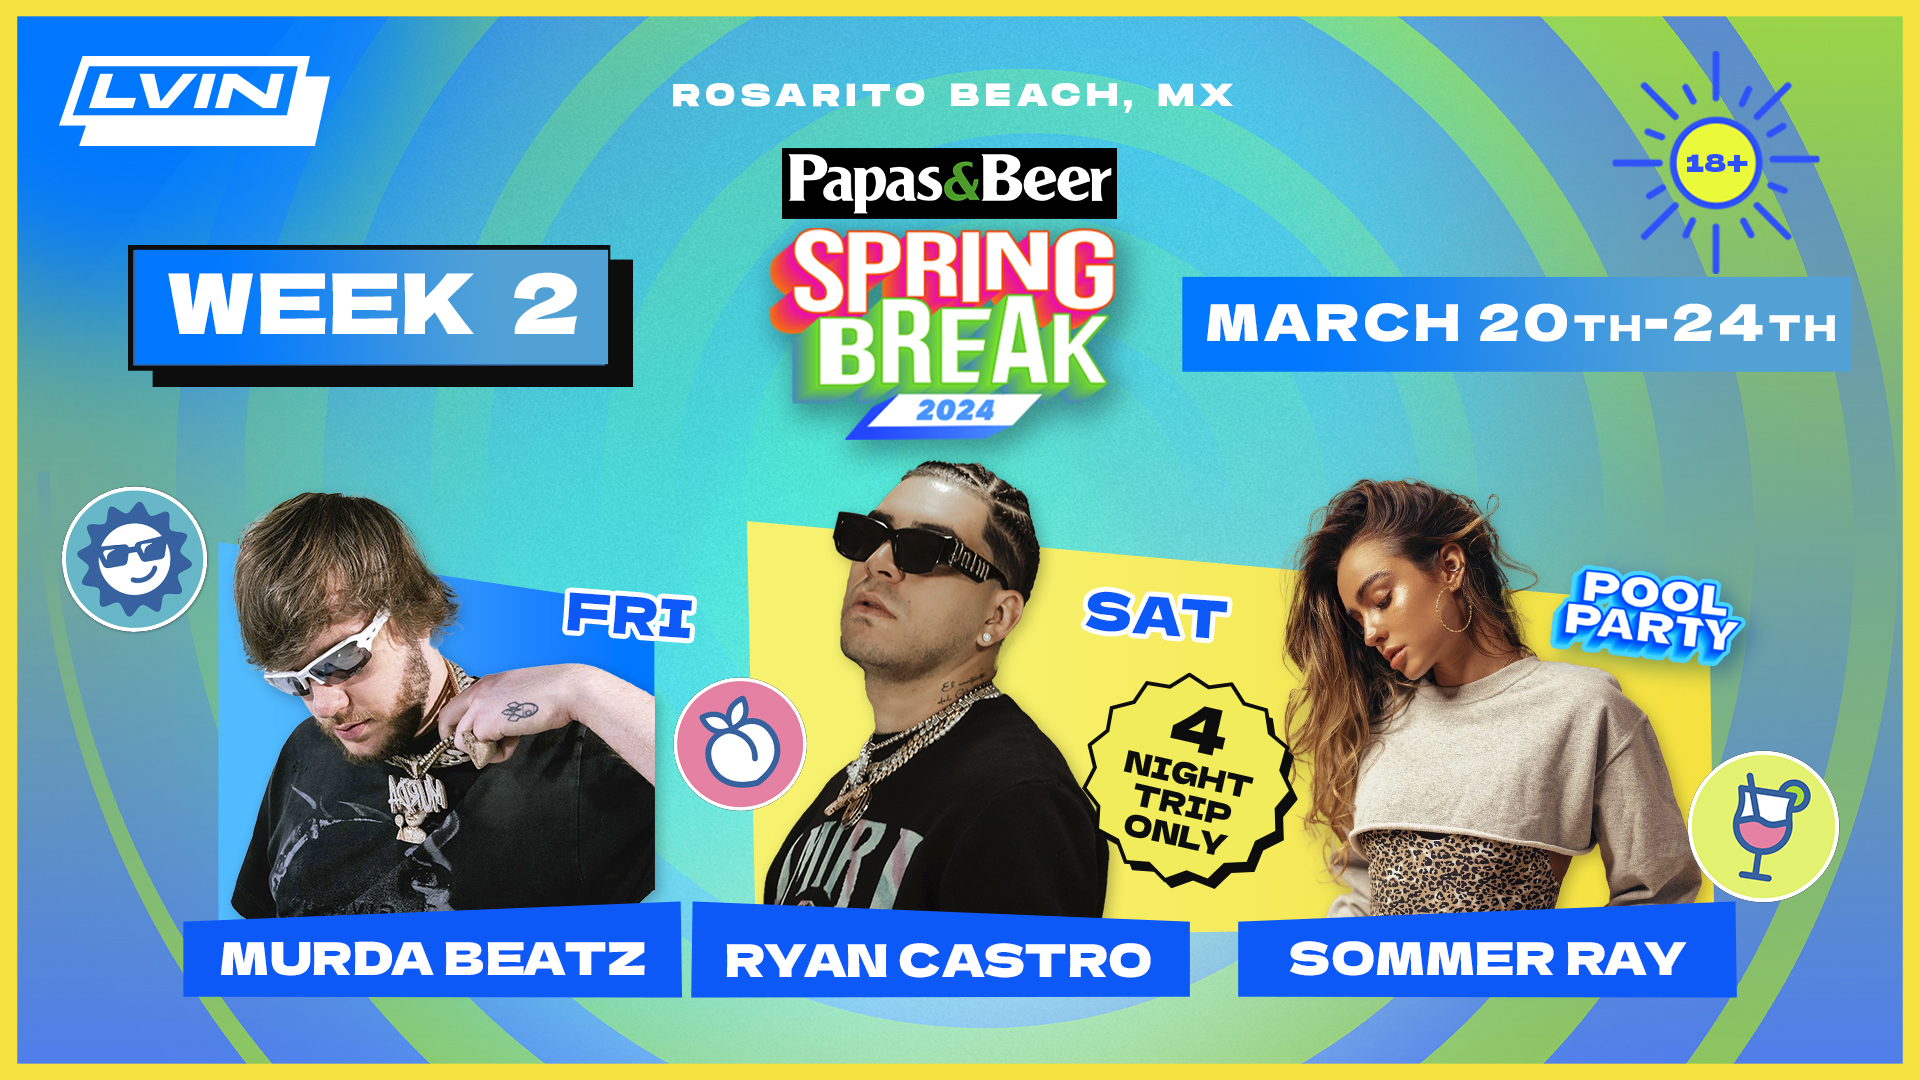 Rosarito Beach Spring Break 2024 Week 2 DJ Artist Murda Beatz Ryan Castro Sommer Ray Papas&Beer Concert LVIN